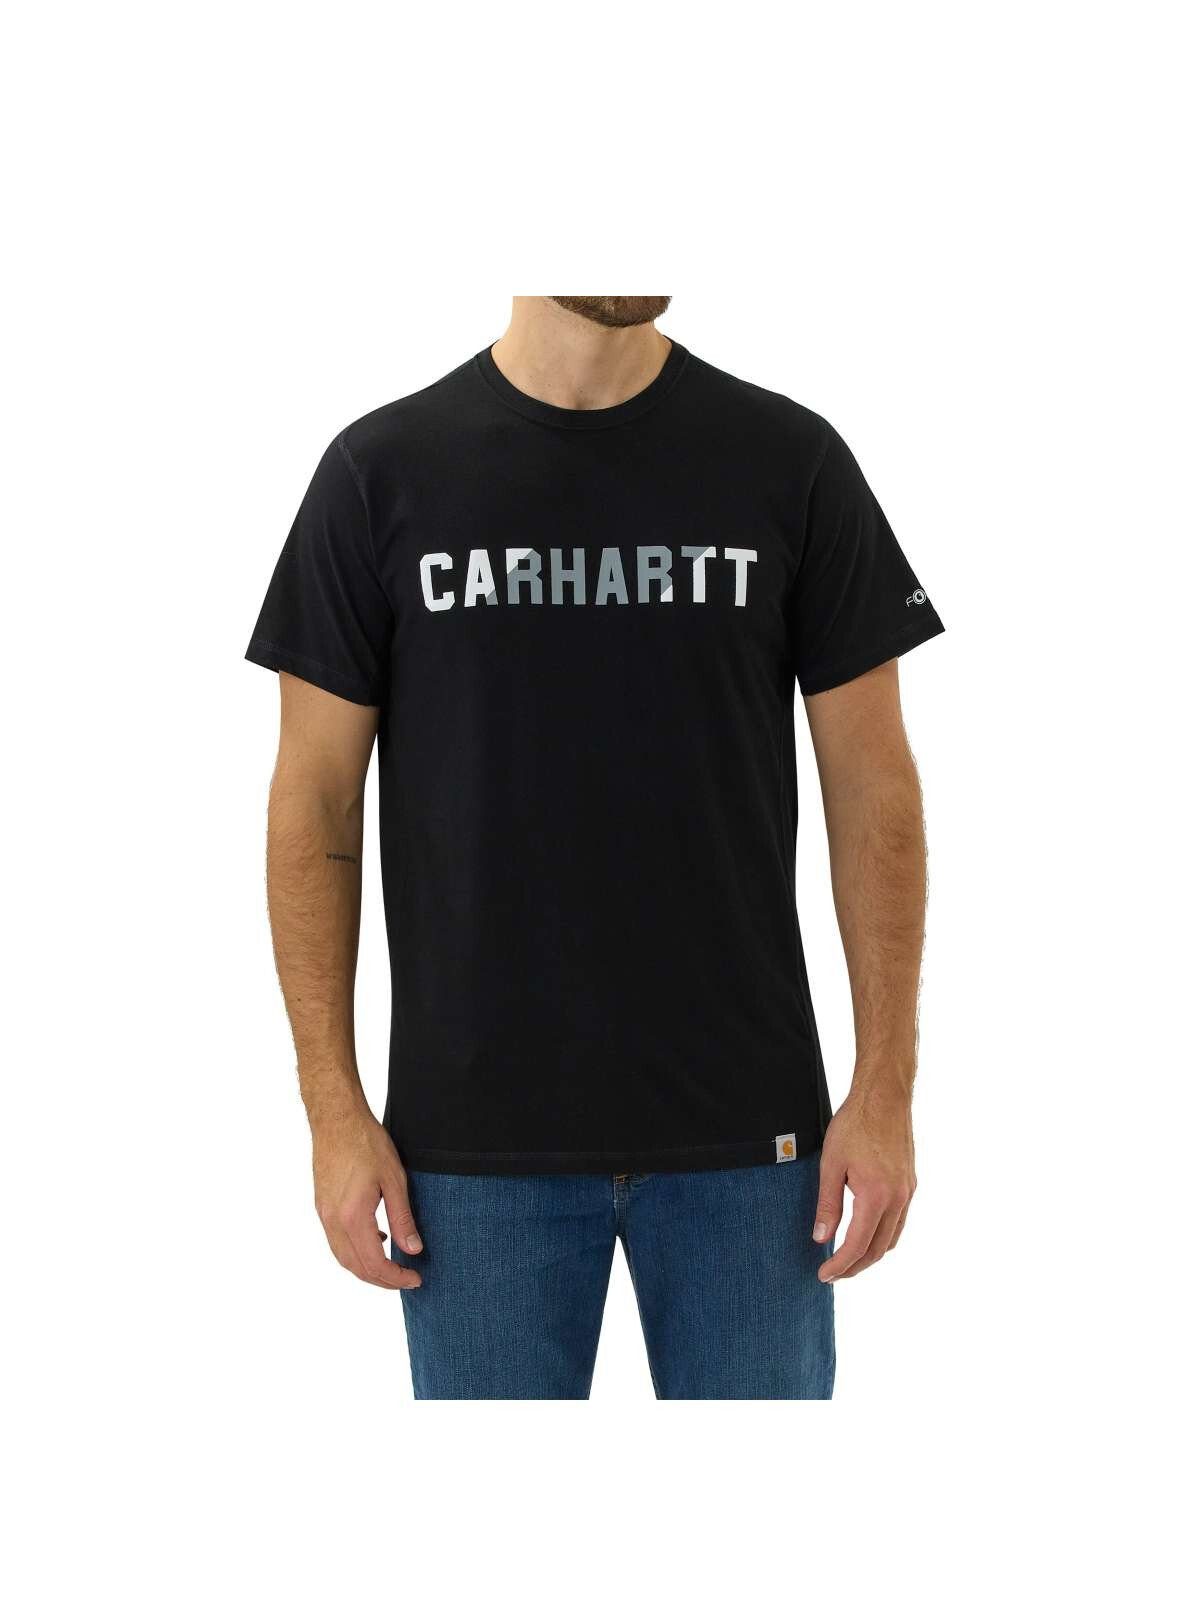 Carhartt Logo T-Shirt T-Shirt black Carhartt